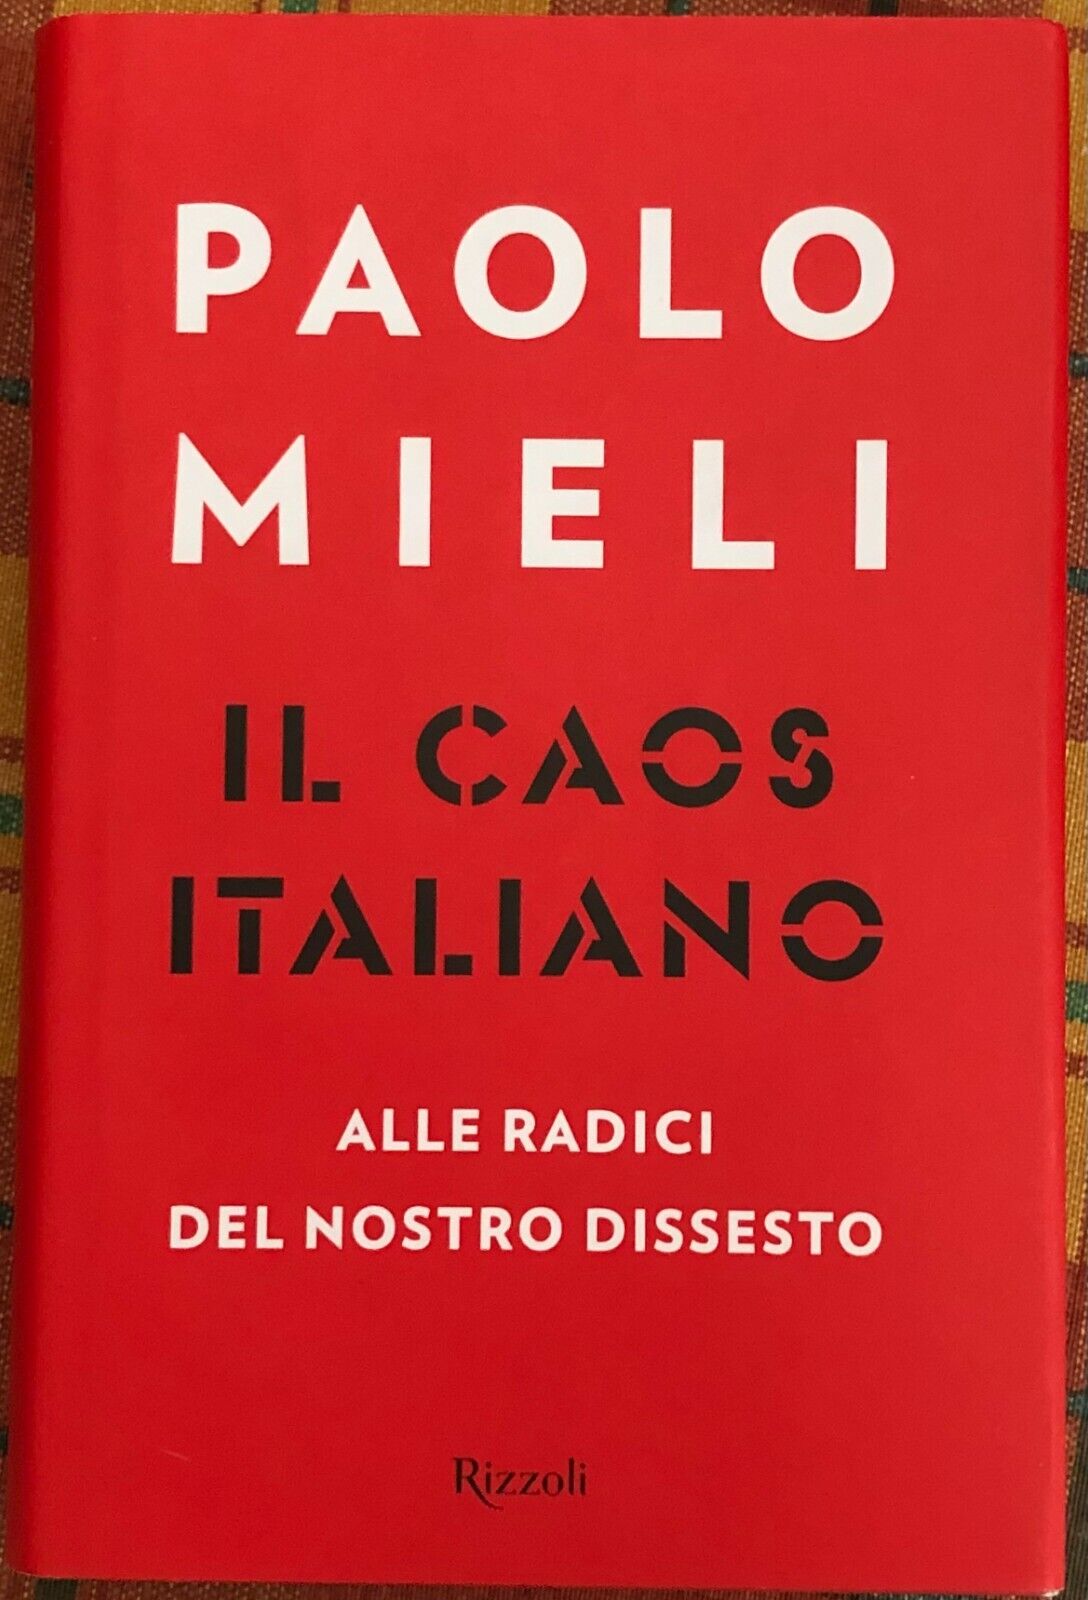  Il caos italiano alle radici del nostro dissesto di Paolo Mieli, 2017, Rizzo libro usato